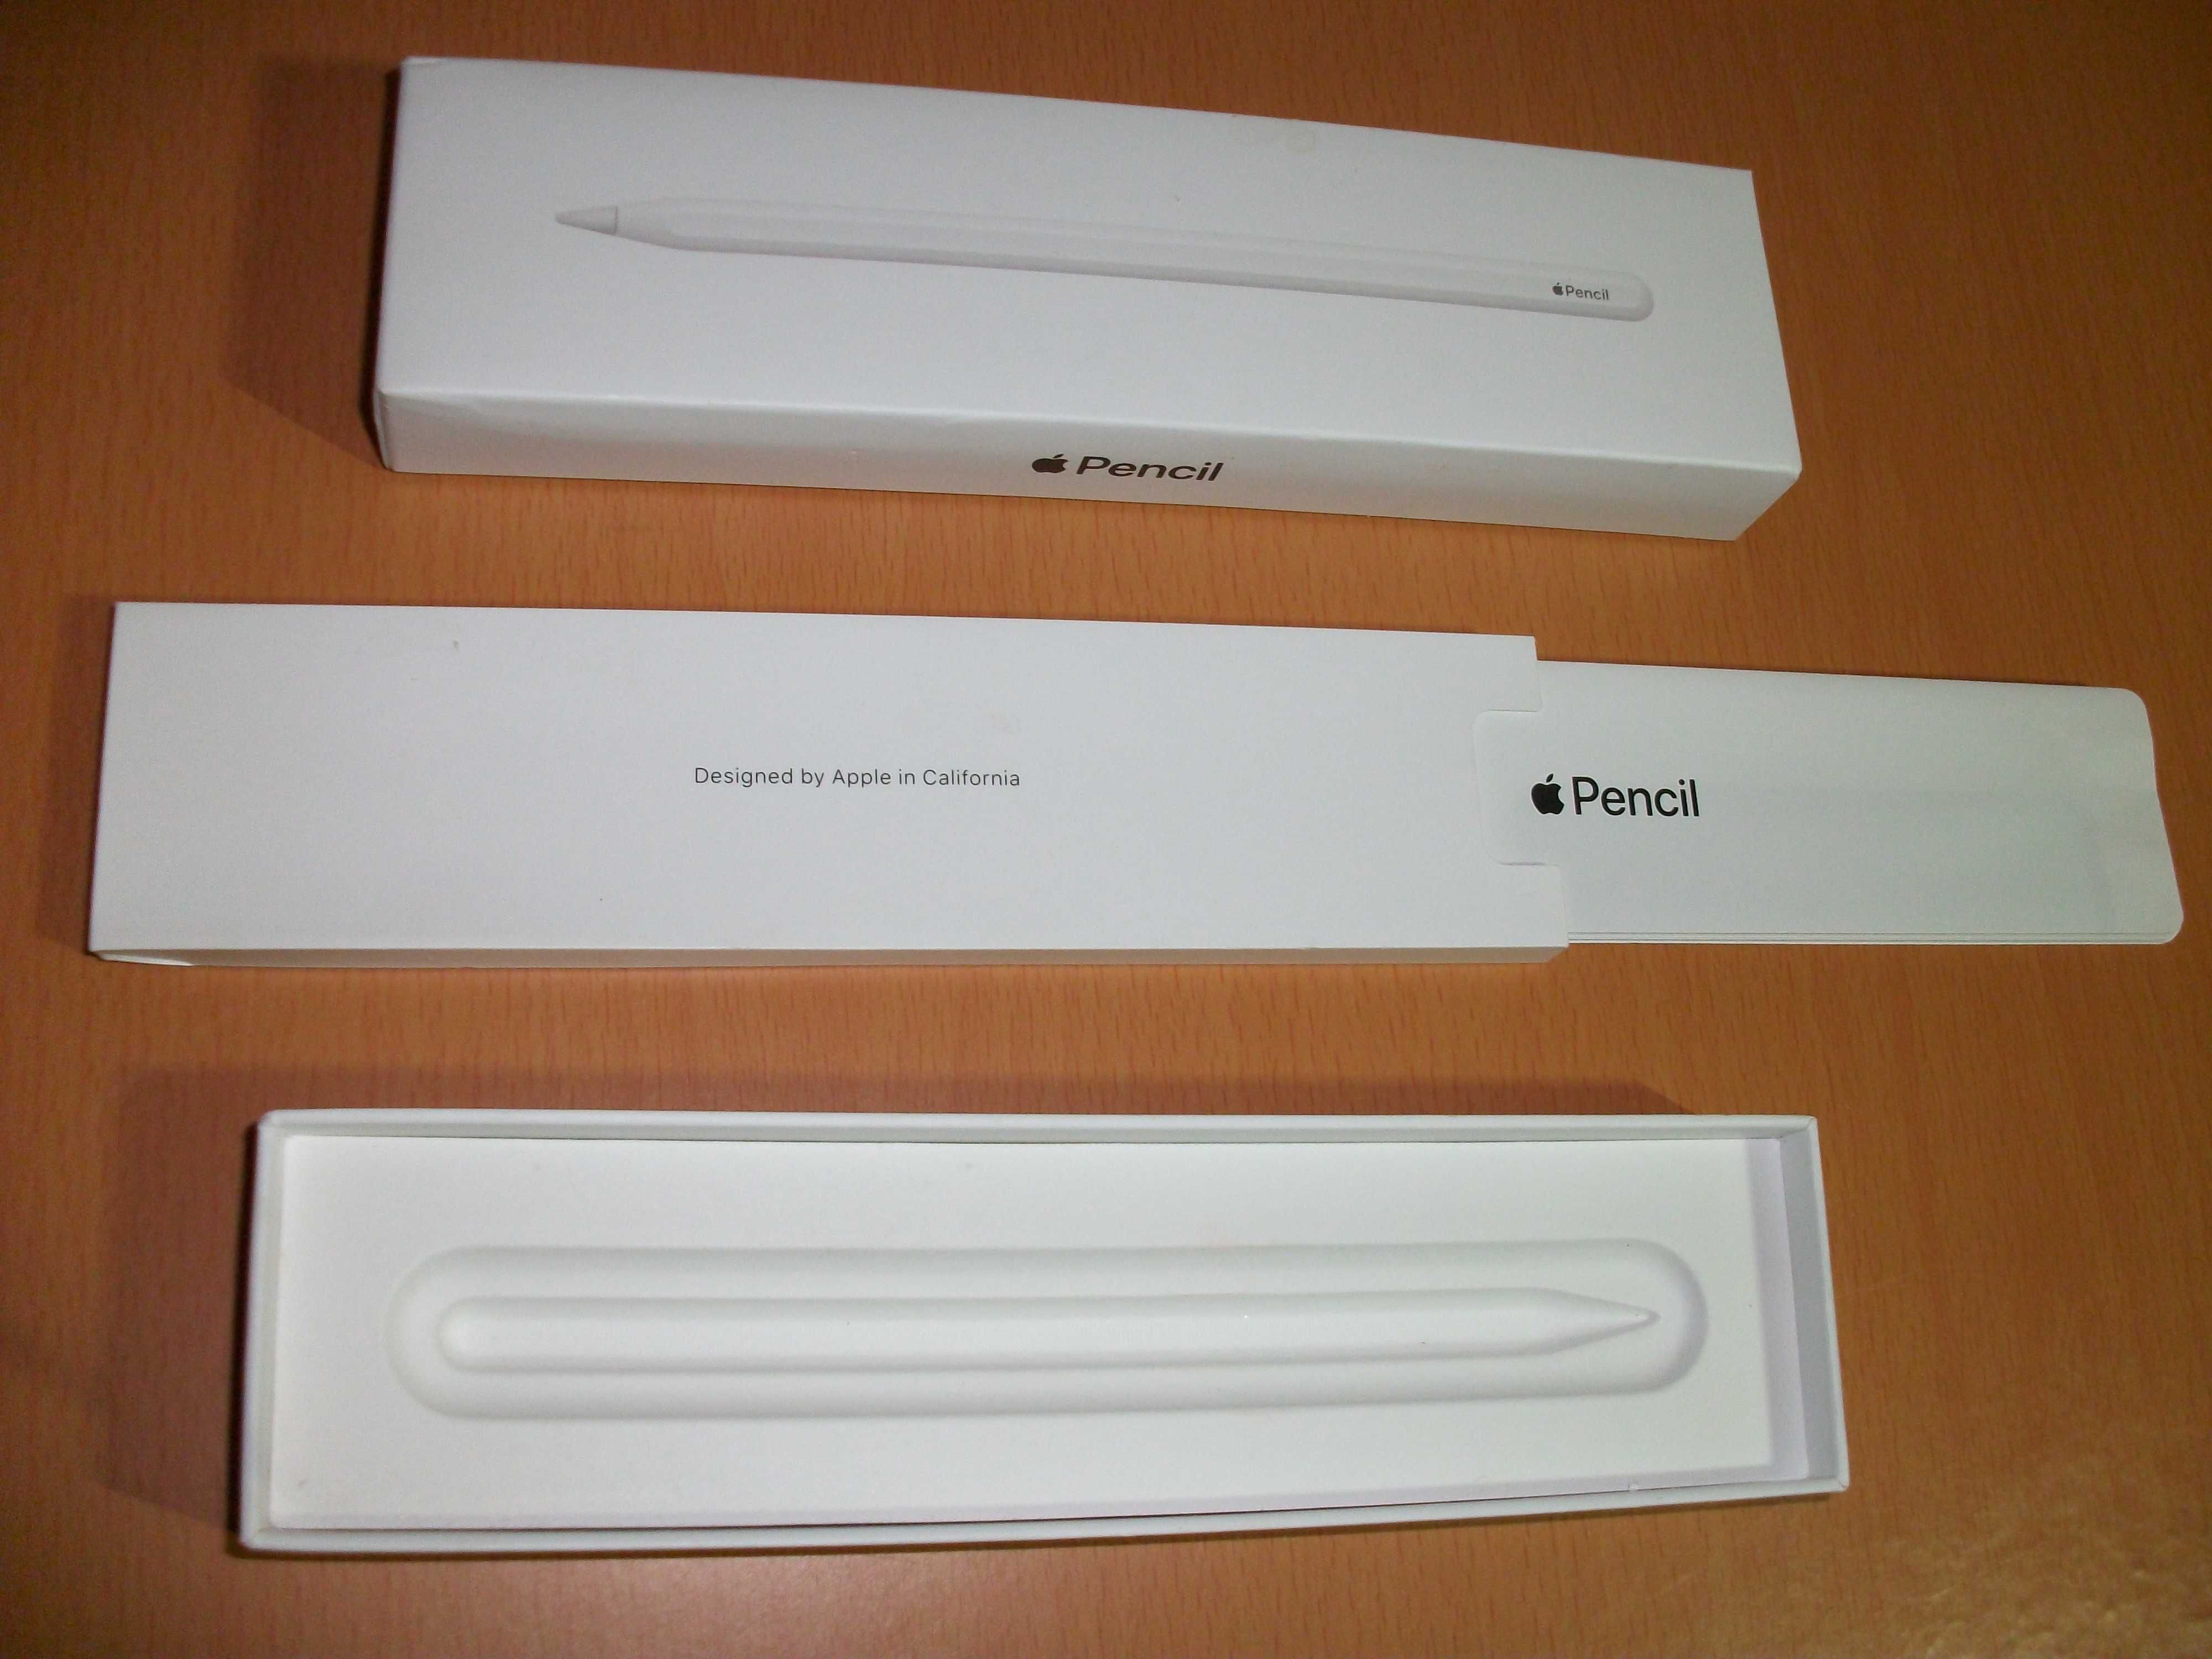 Caixa Apple Pencil 2º geração
Model A2051